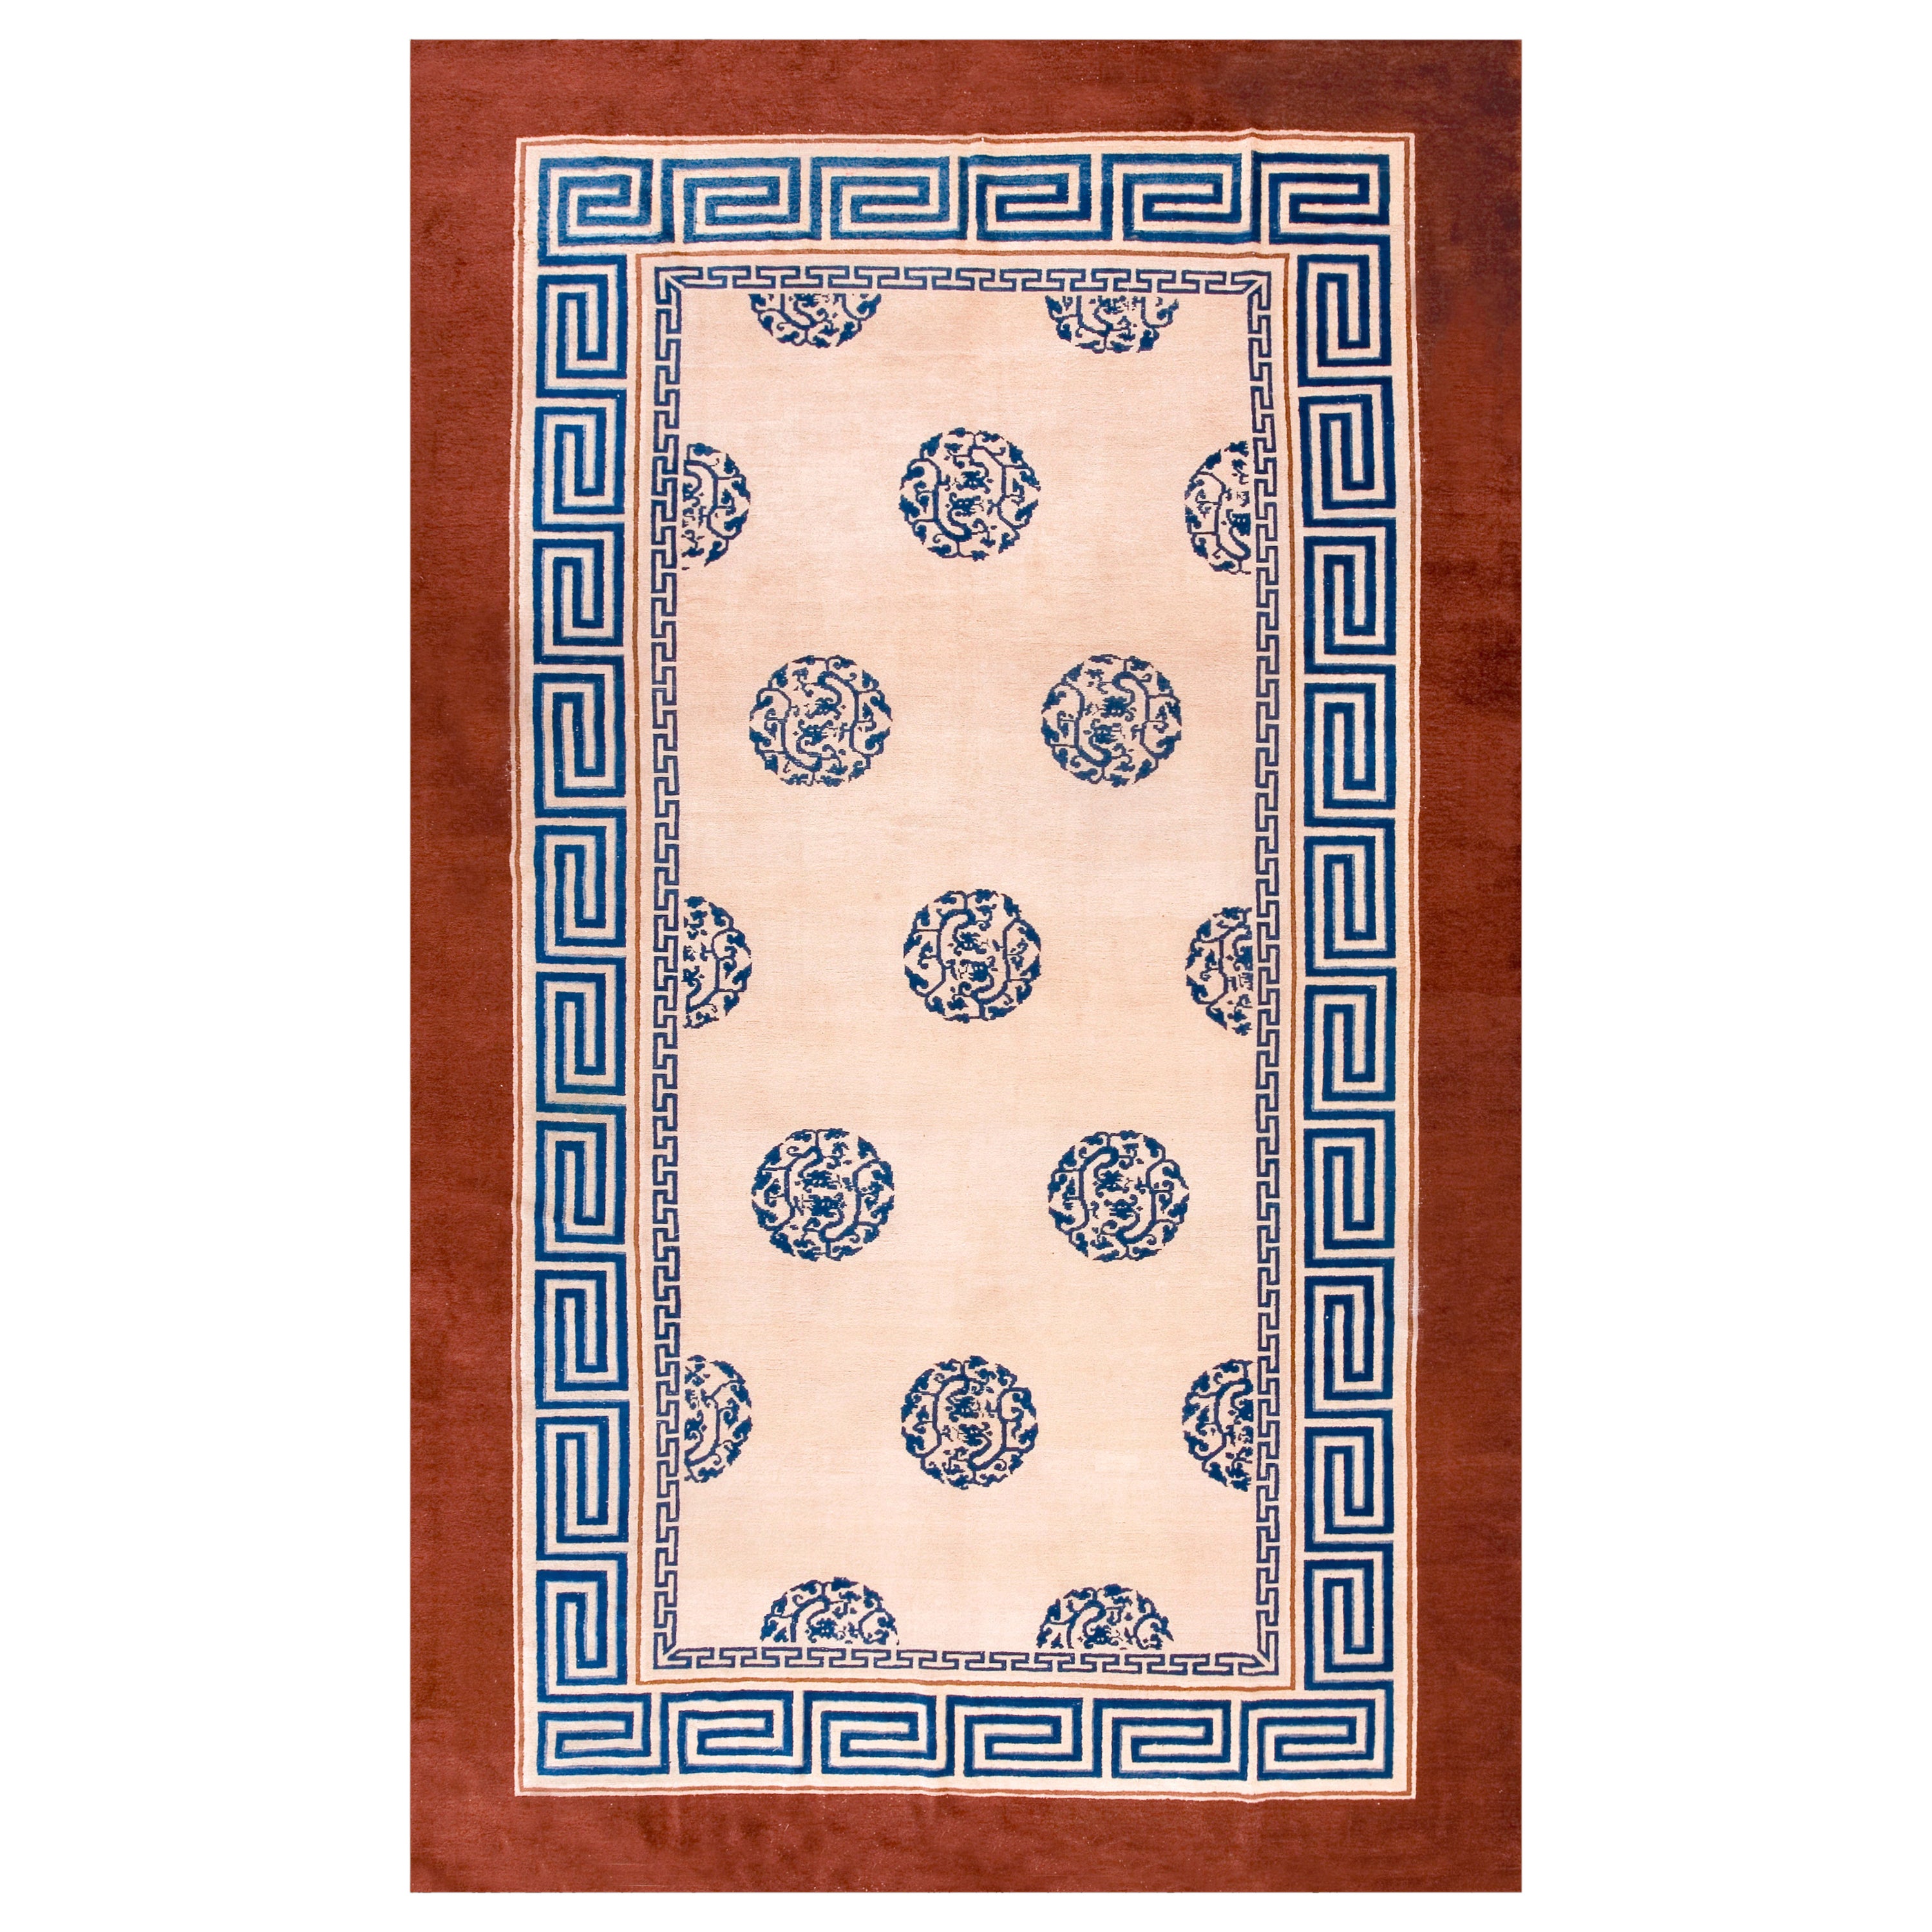 19th Century Chinese Peking Carpet in Kangxi Style ( 8' x 13'6" - 245 x 410 )